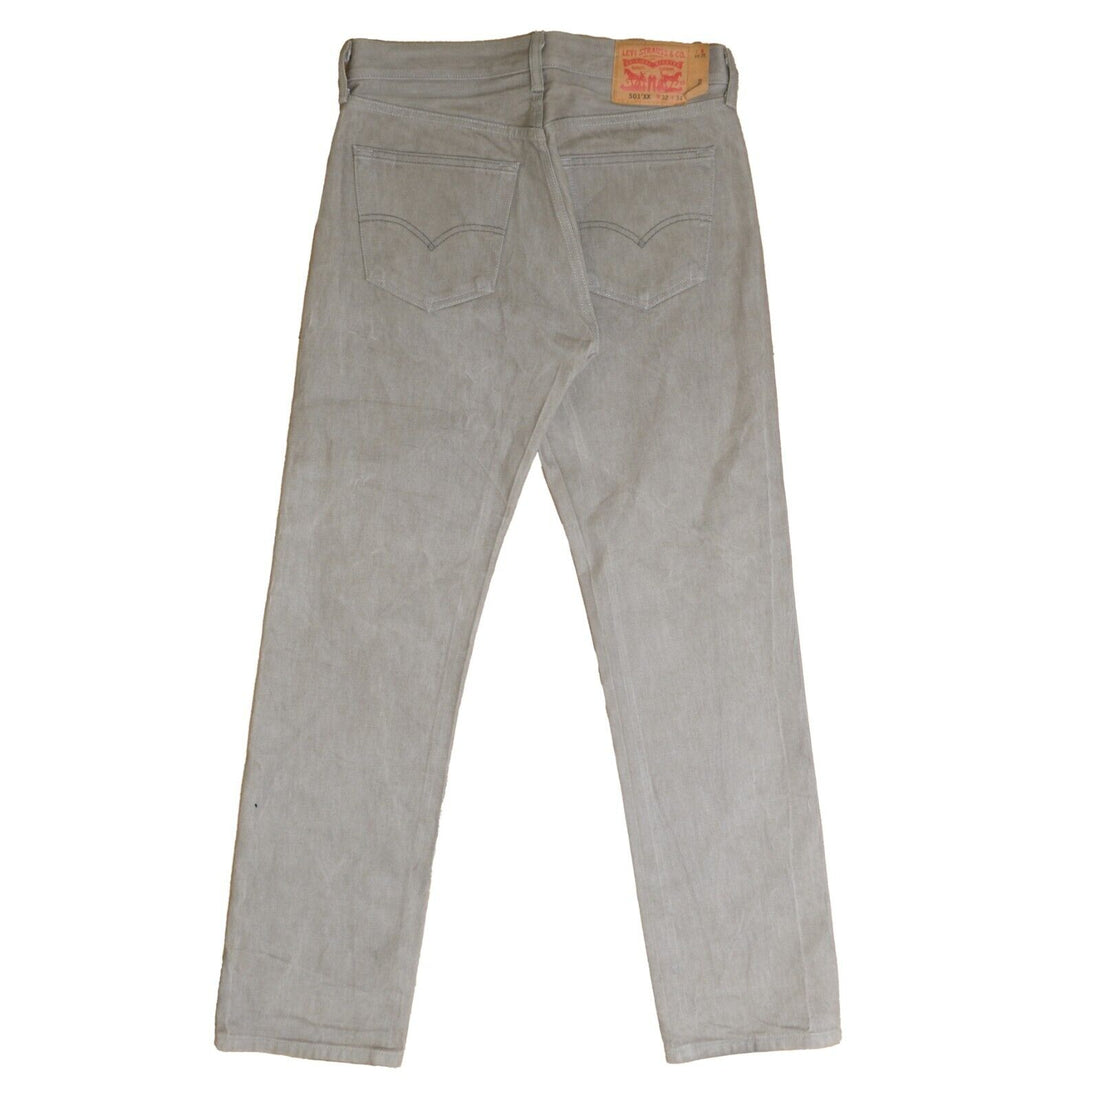 Levi Strauss & Co 501 XX Denim Jeans Pants Size 32 X 34